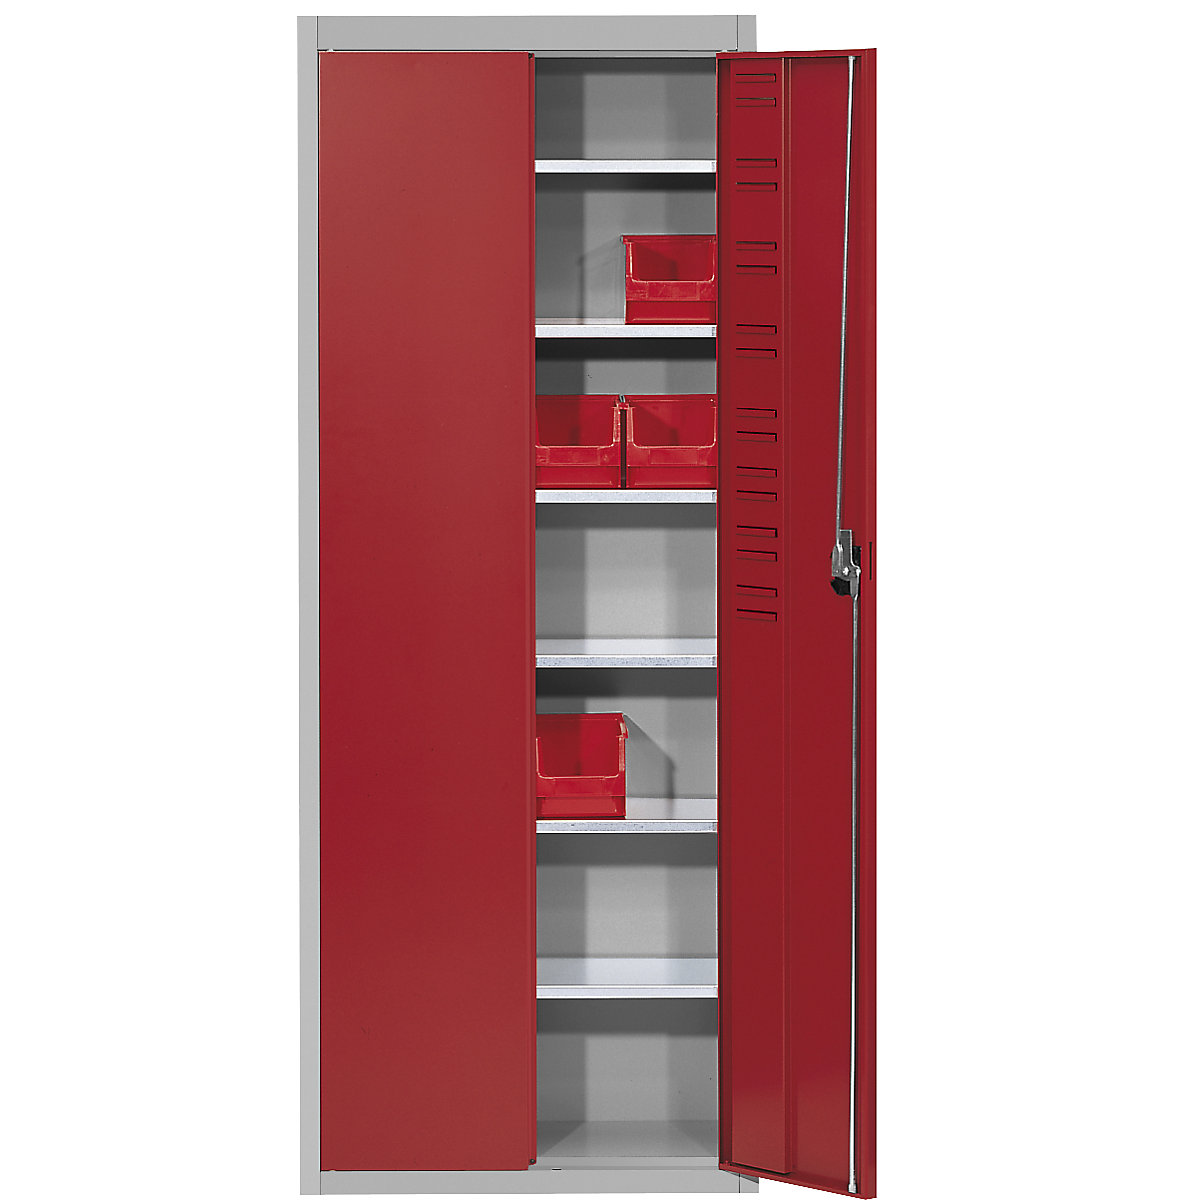 Skladová skříň, bez přepravek s viditelným obsahem – mauser, v x š x h 1740 x 680 x 280 mm, dvoubarevná, korpus šedý, dveře červené, od 3 ks-6